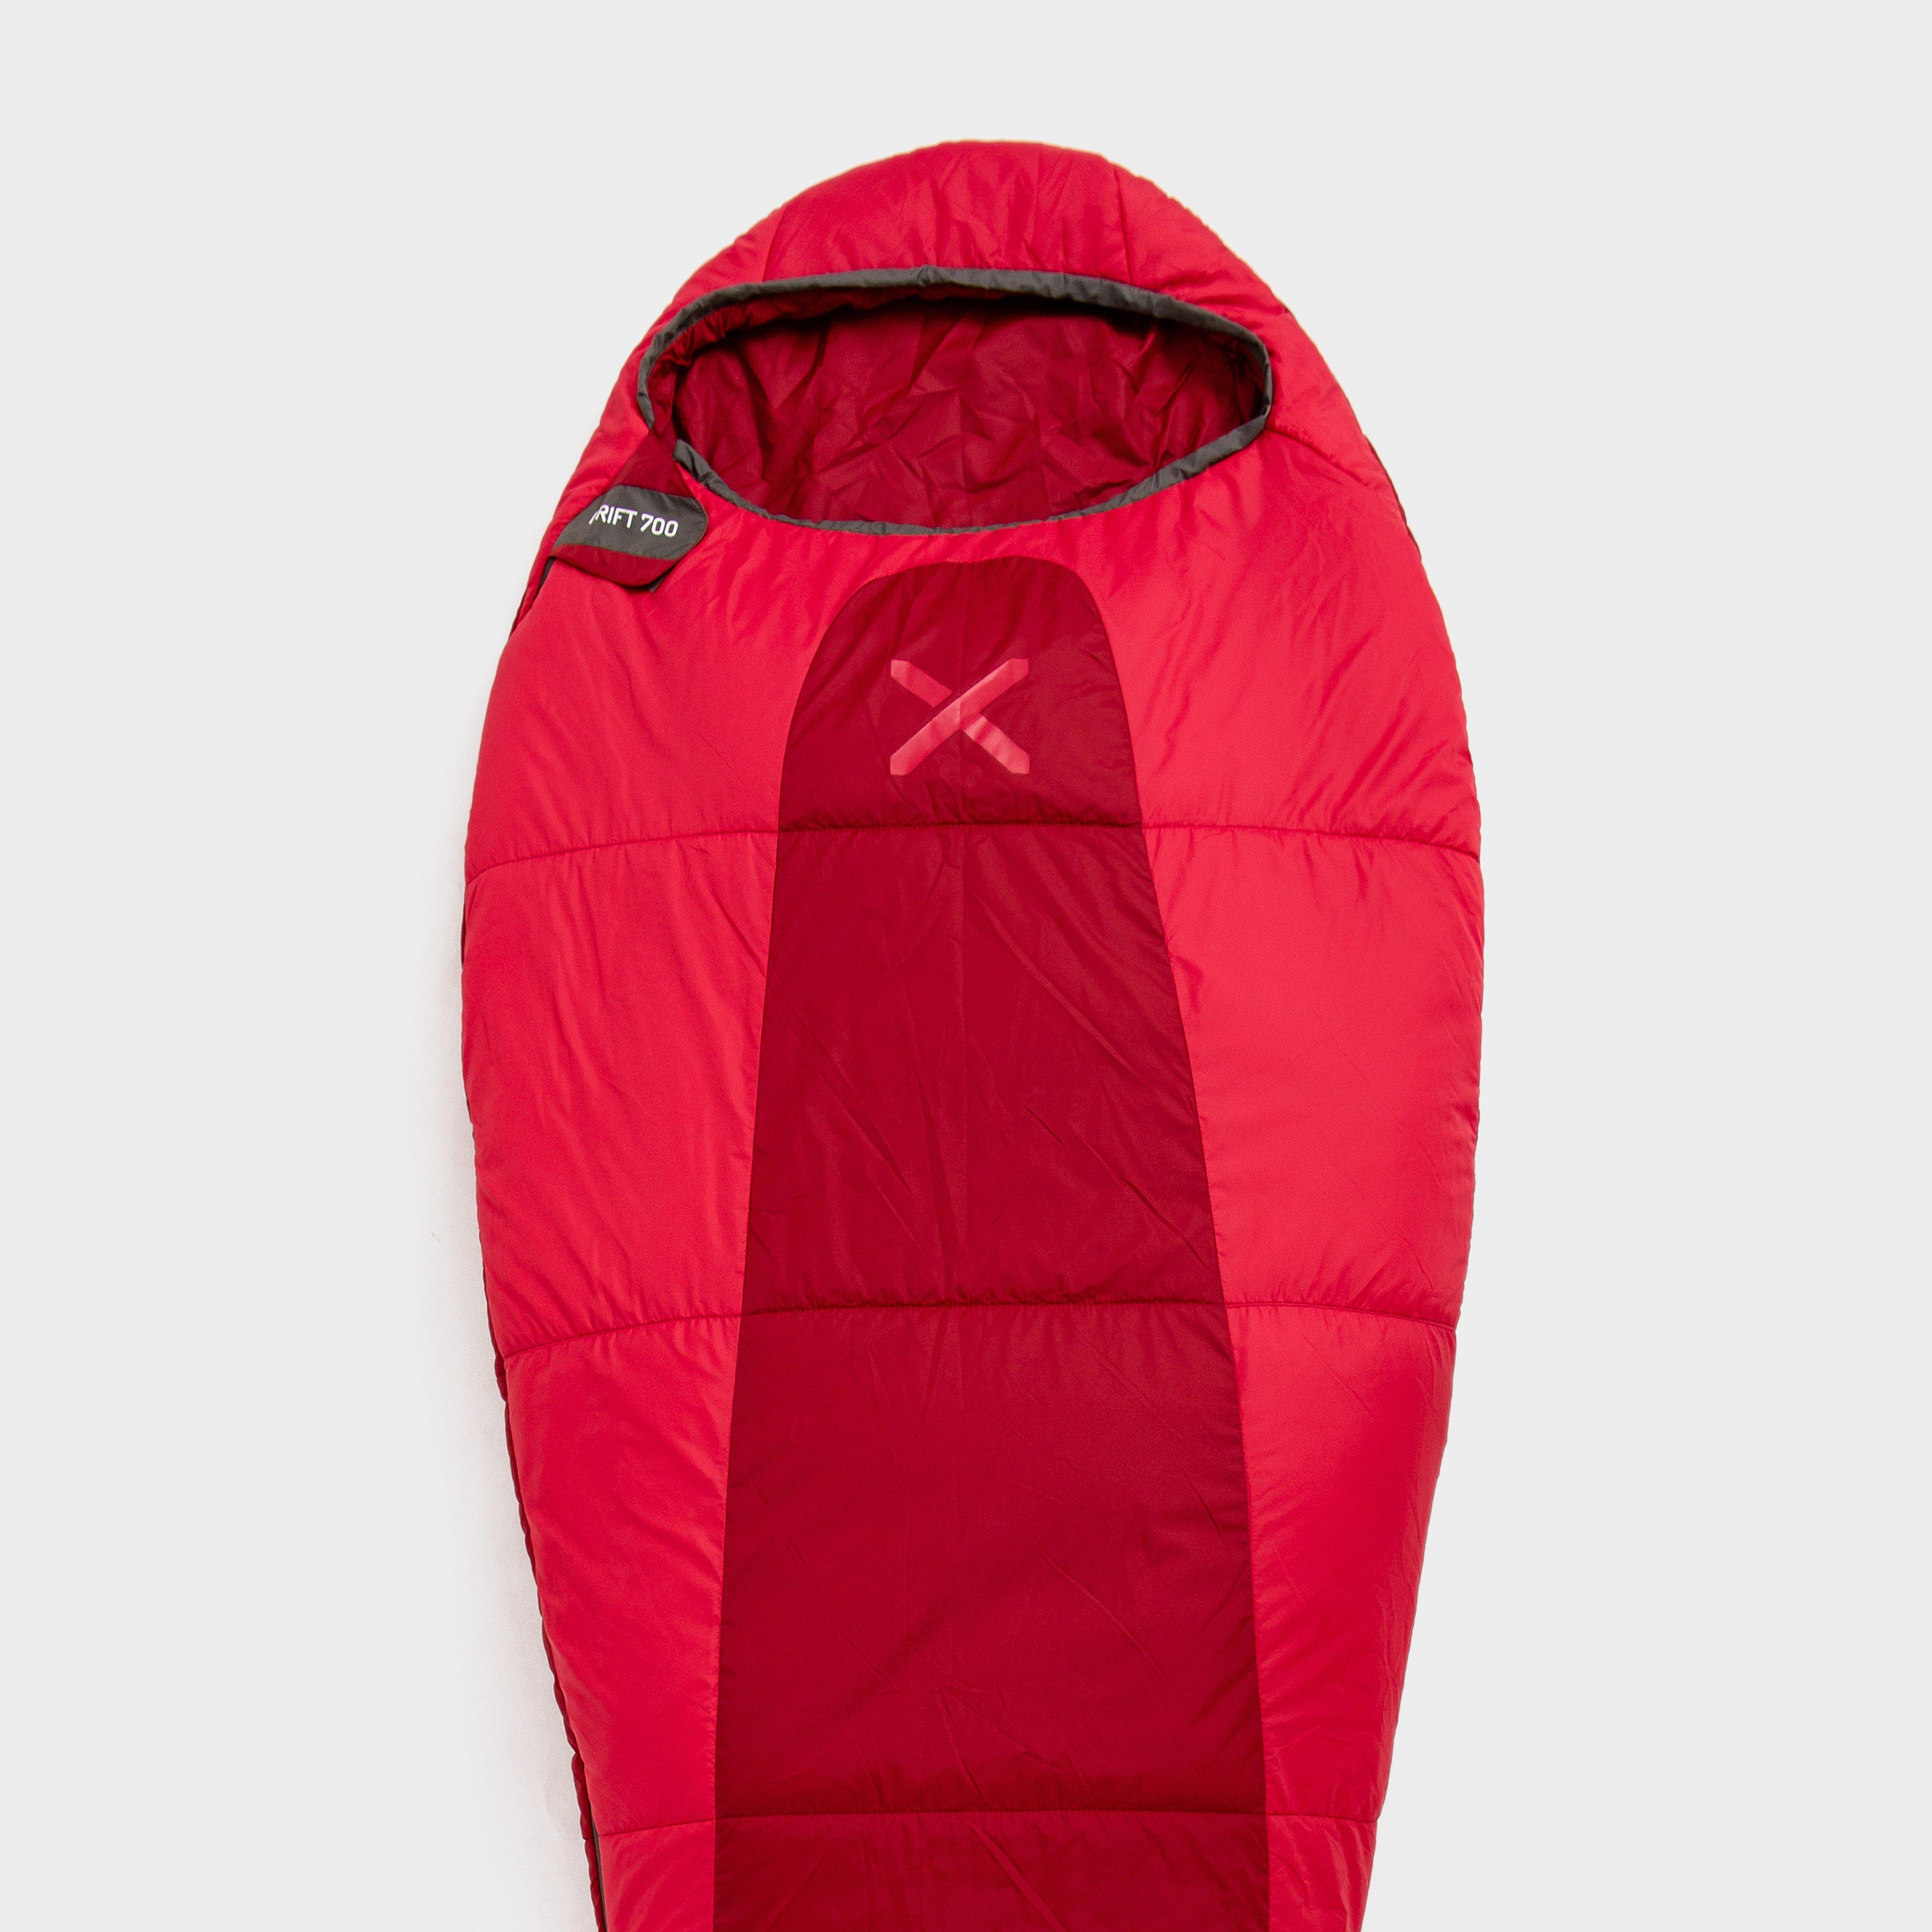 Oex Drift 700 Sleeping Bag  Red